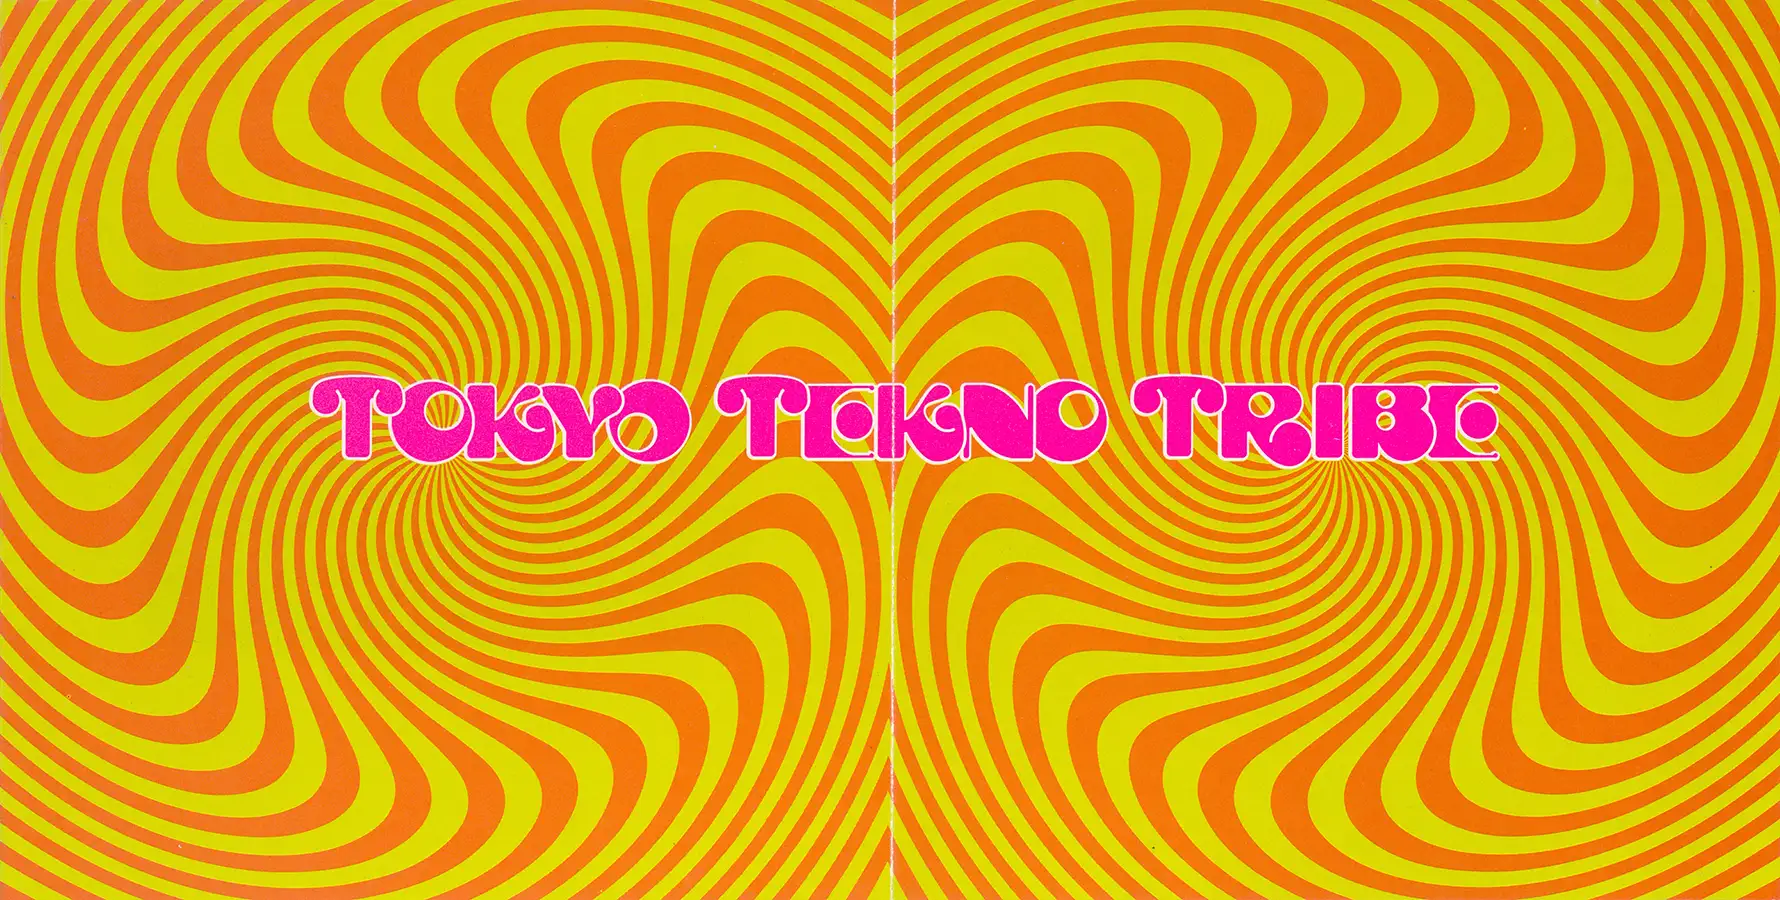 Tokyo Tekno Tribe 2 compilation, CD from 1996 at PsyDB